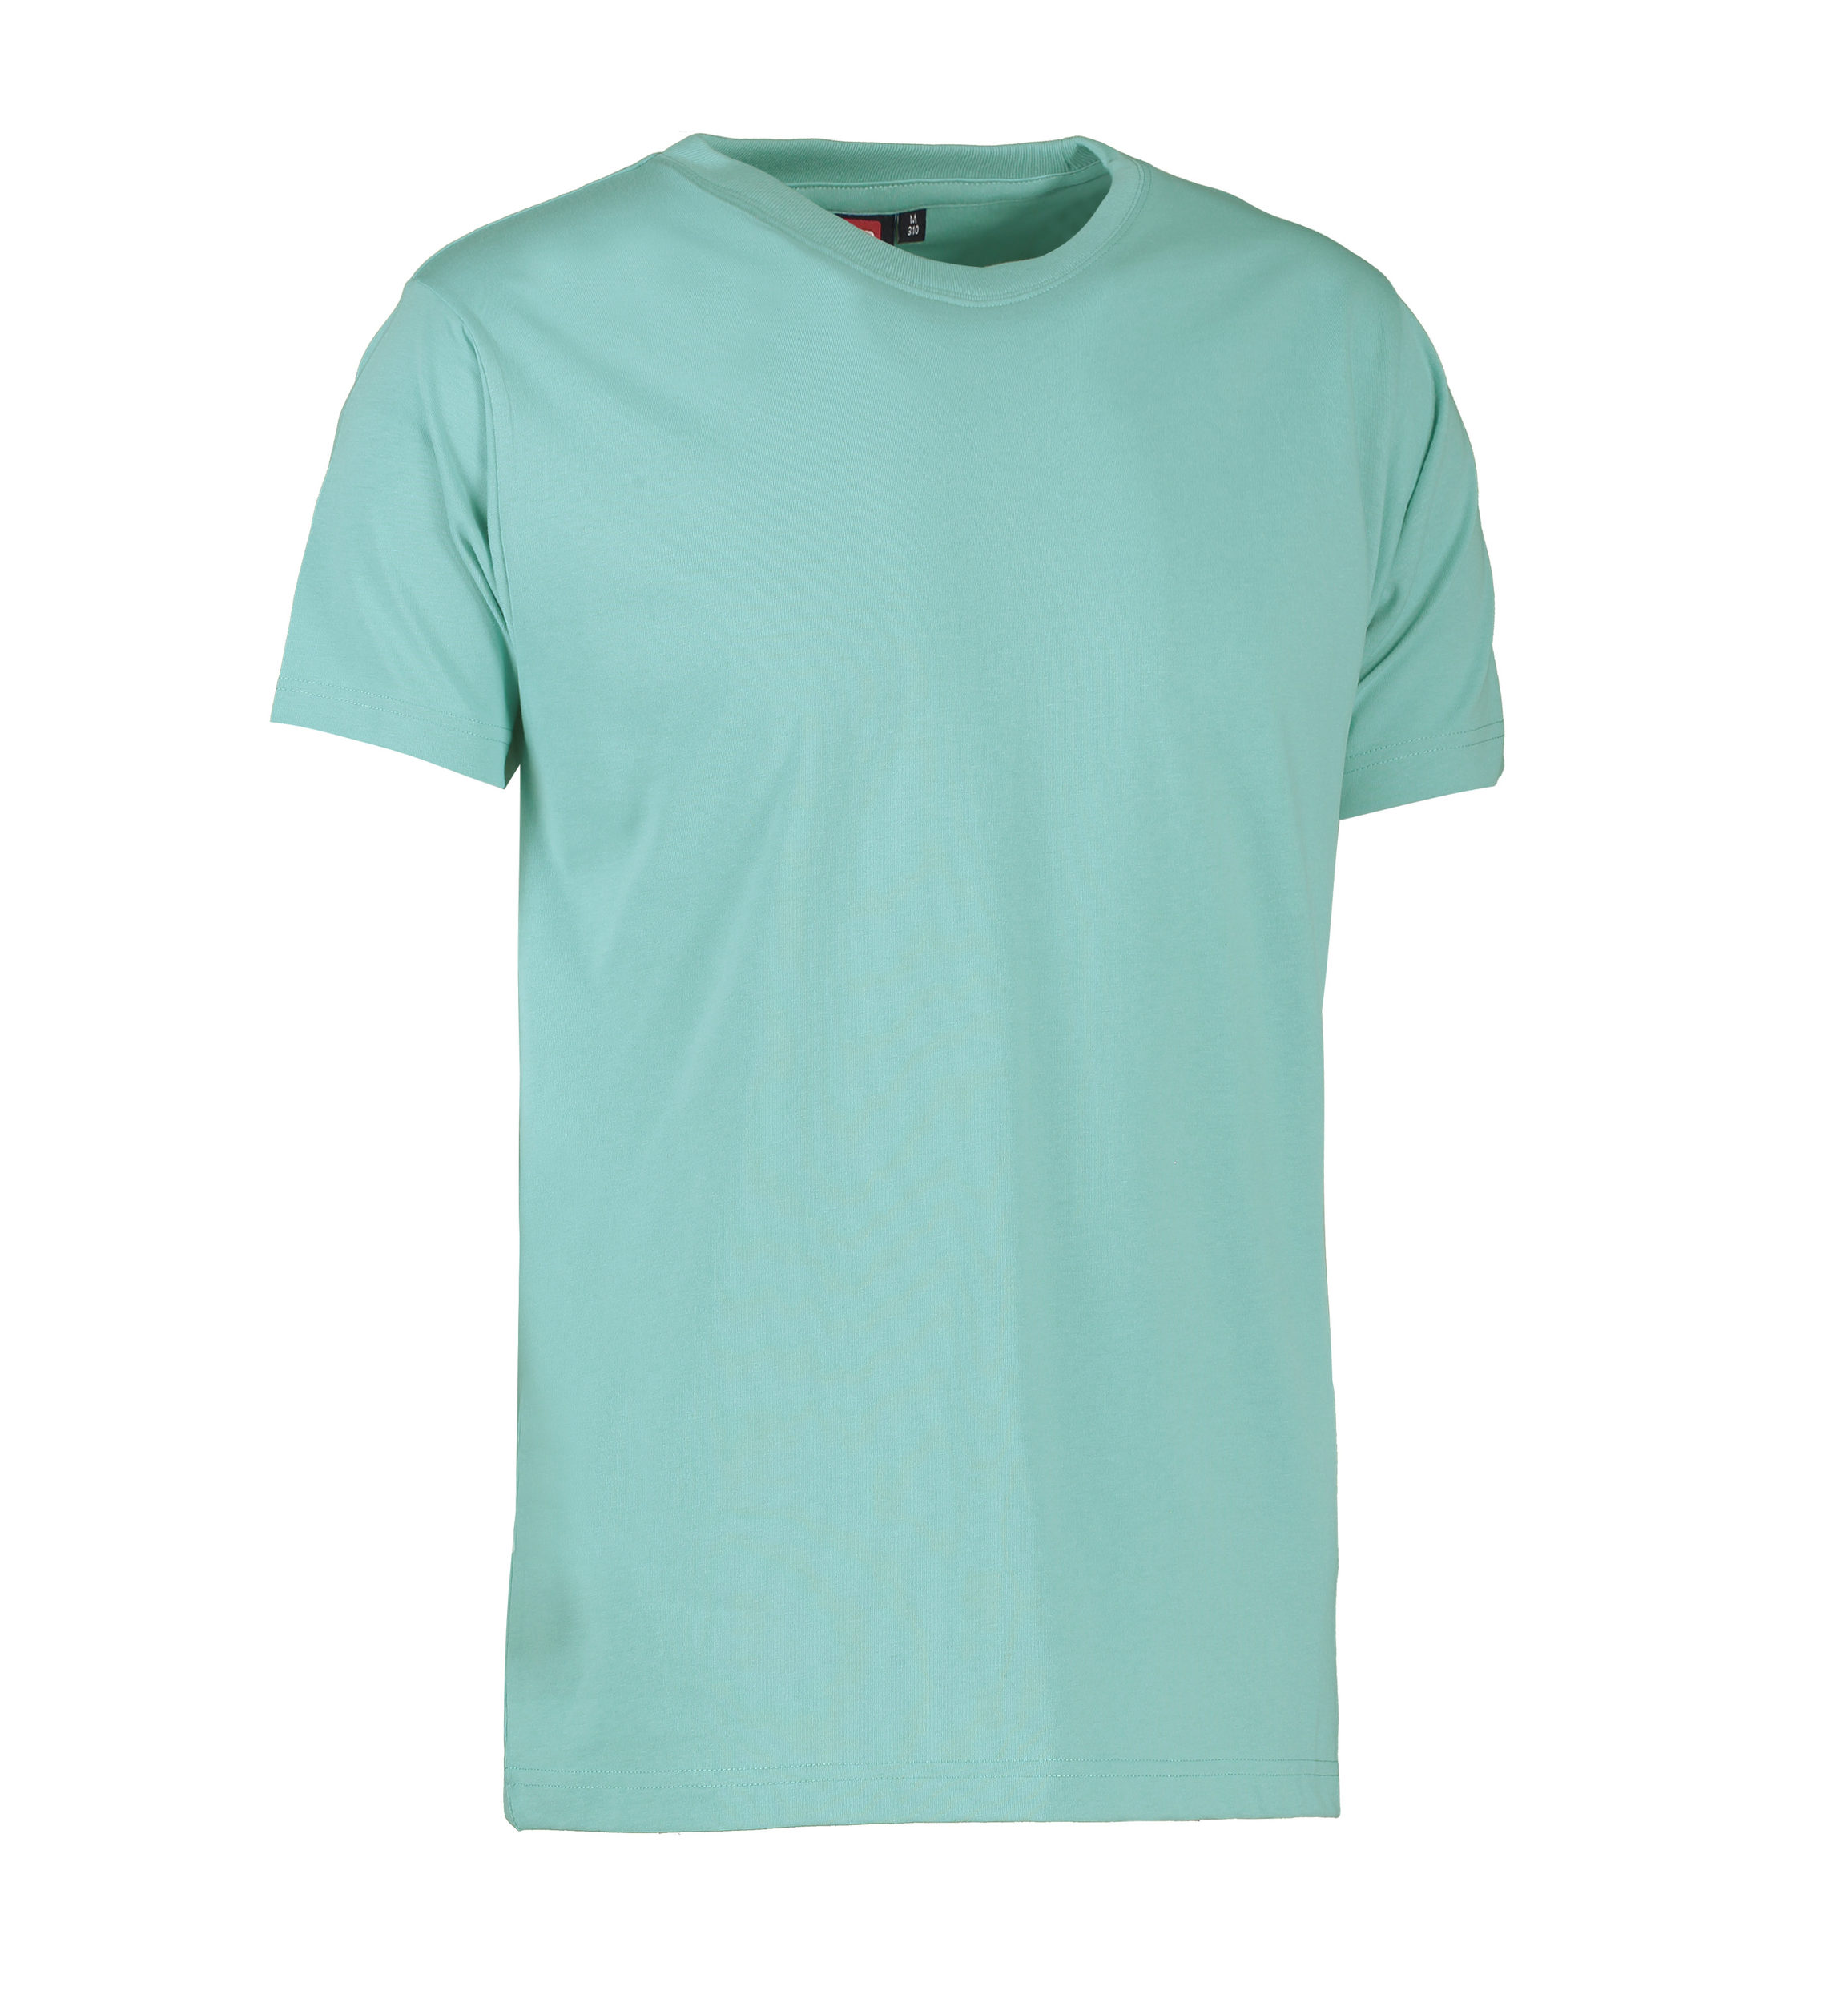 Billede af Slidstærk t-shirt i lys grøn til mænd - 3XL hos Sygeplejebutikken.dk